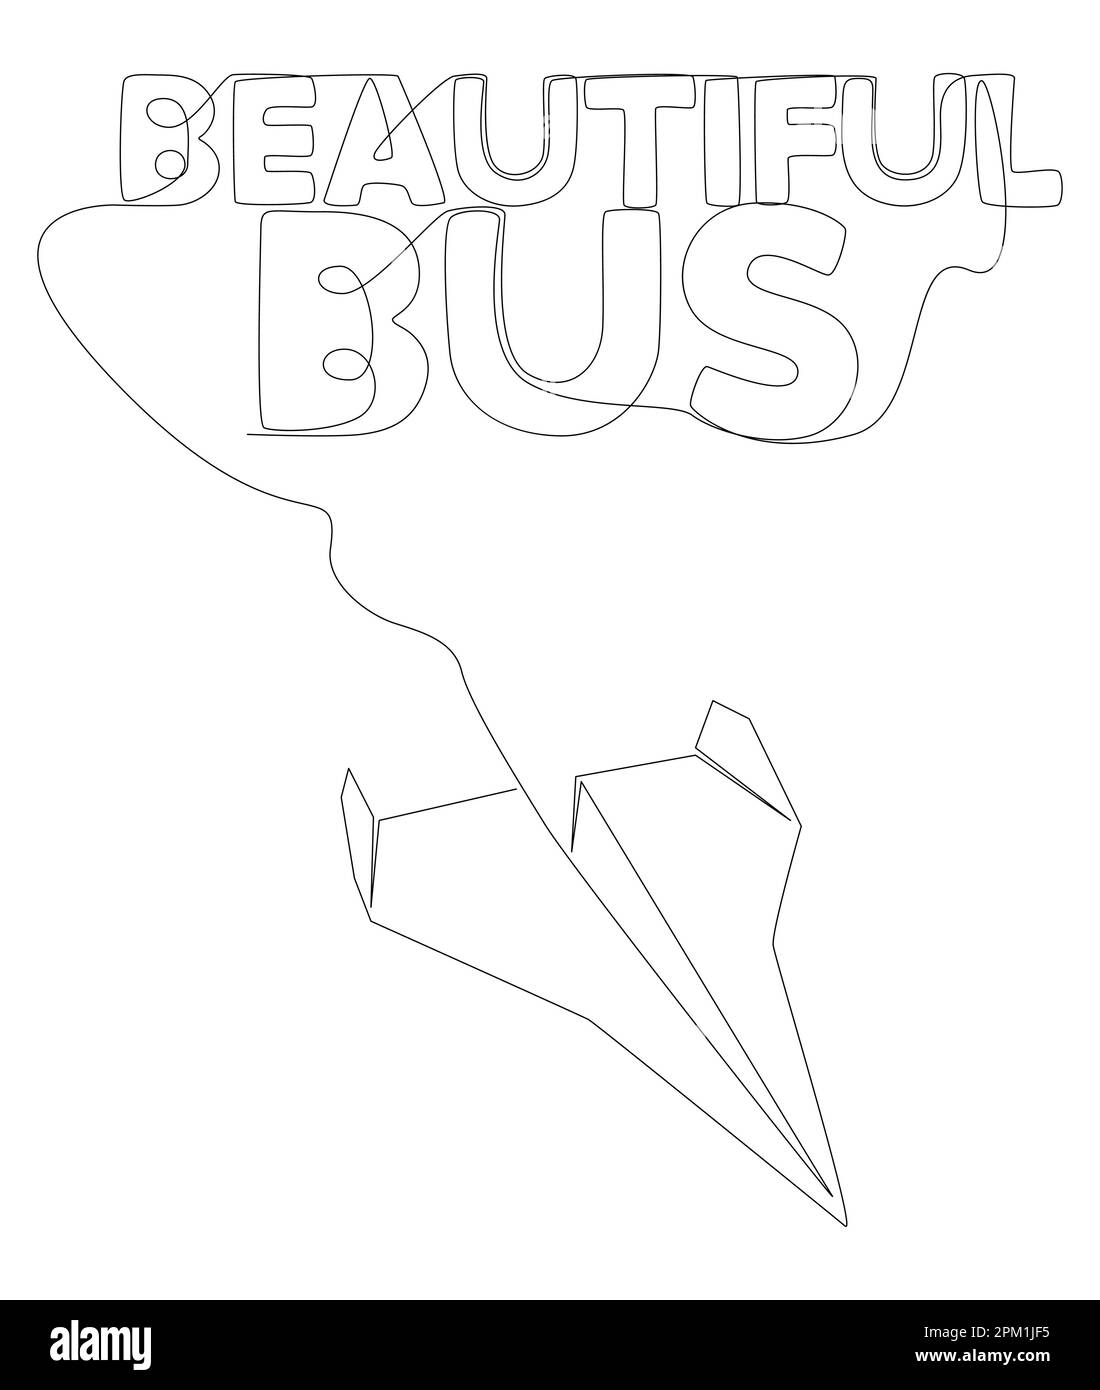 Eine durchgehende Linie von Paper Airplane mit wunderschönem Bus Text. Vektorkonzept zur Darstellung dünner Linien. Kontur Zeichnen kreativer Ideen. Stock Vektor